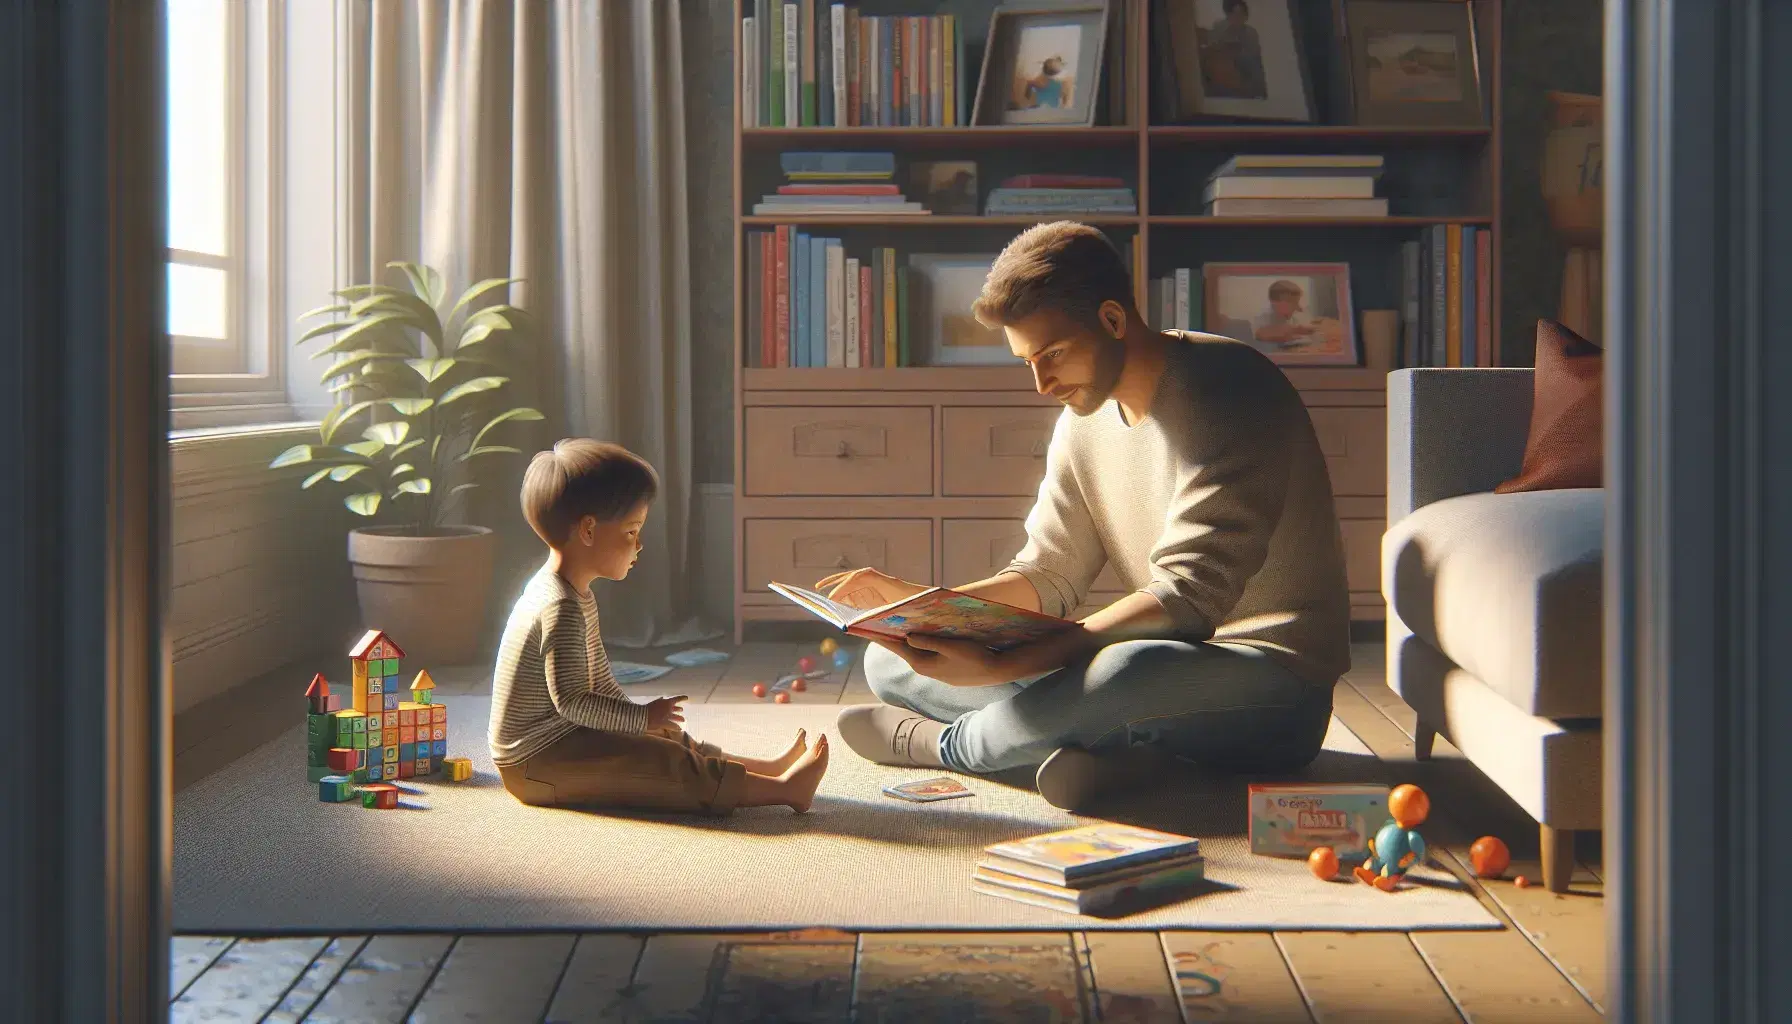 Escena familiar con adulto y niño sentados en alfombra leyendo un libro, rodeados de juguetes educativos y una planta, en una habitación iluminada naturalmente.